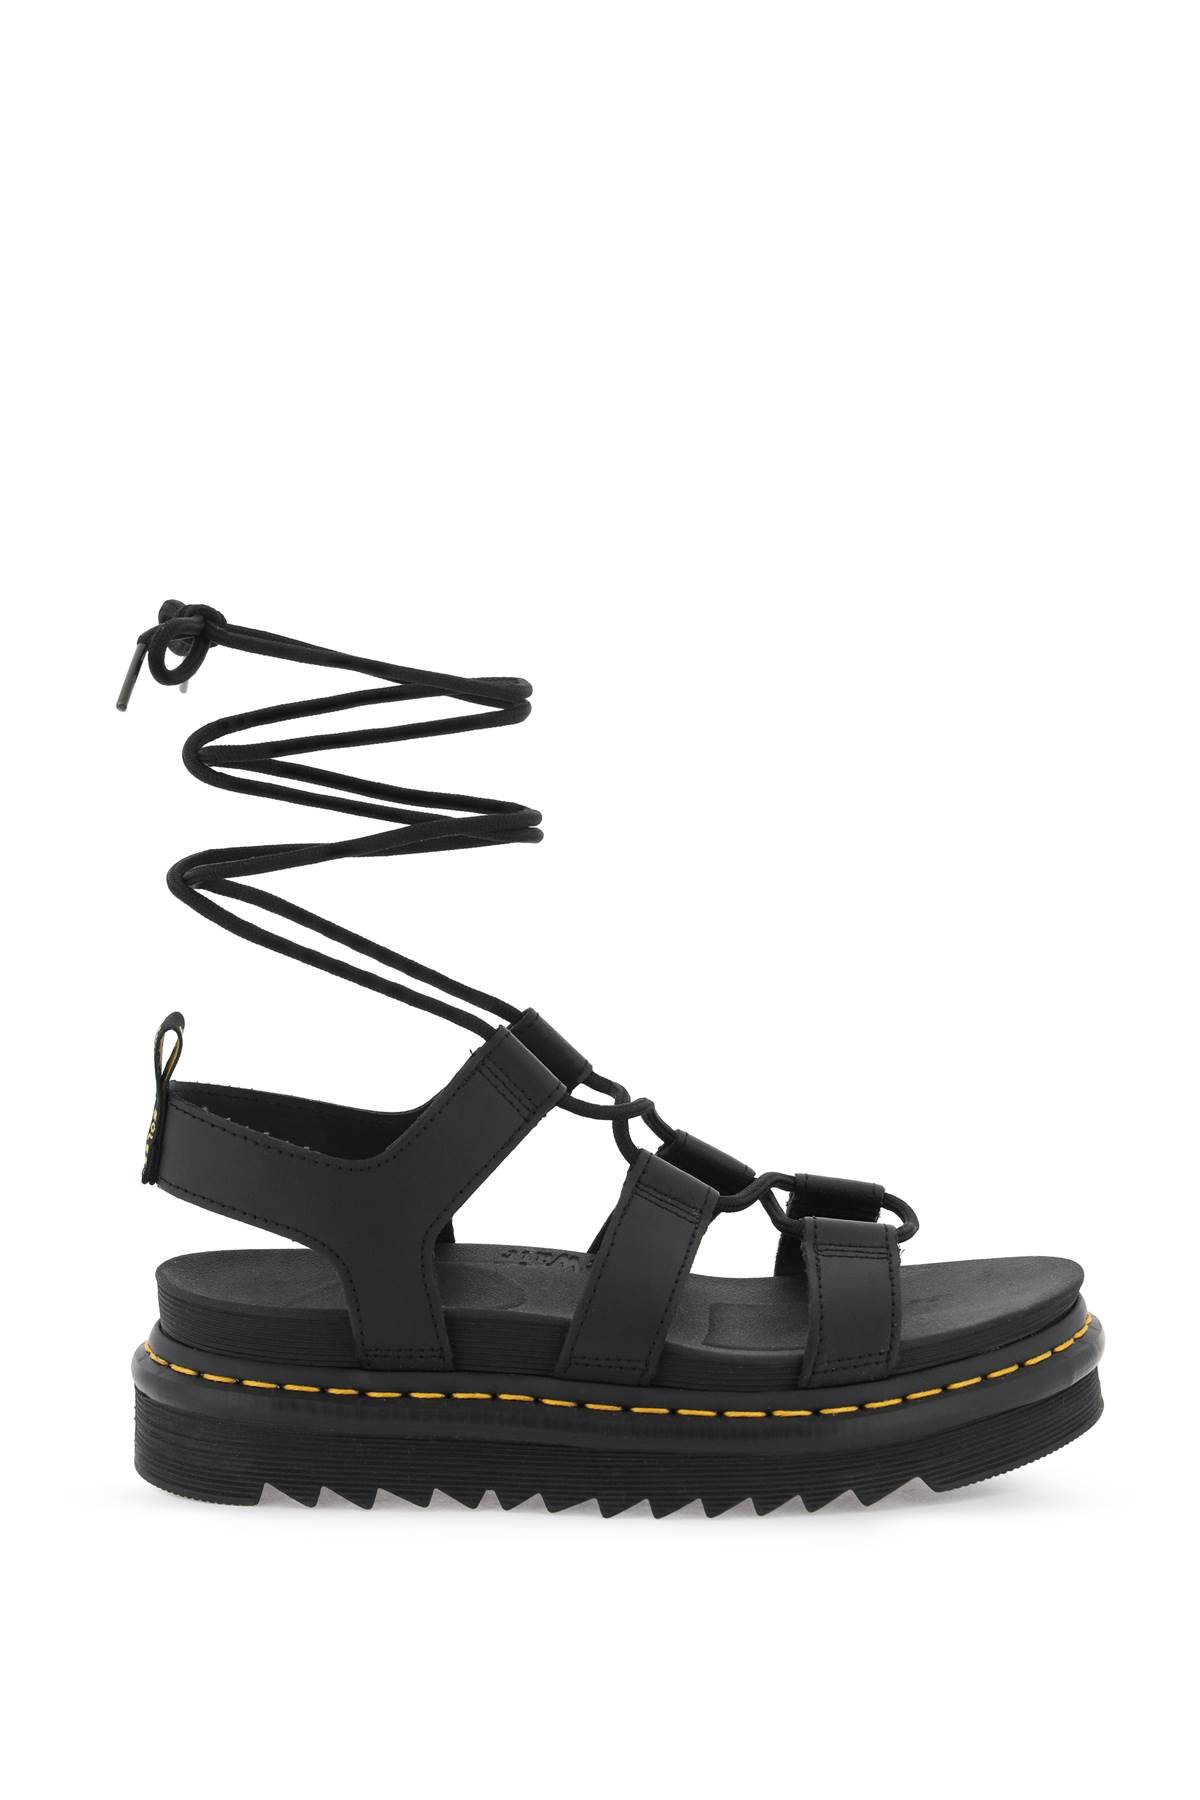 Nartilla Hydro - Ankle Strap Sandal